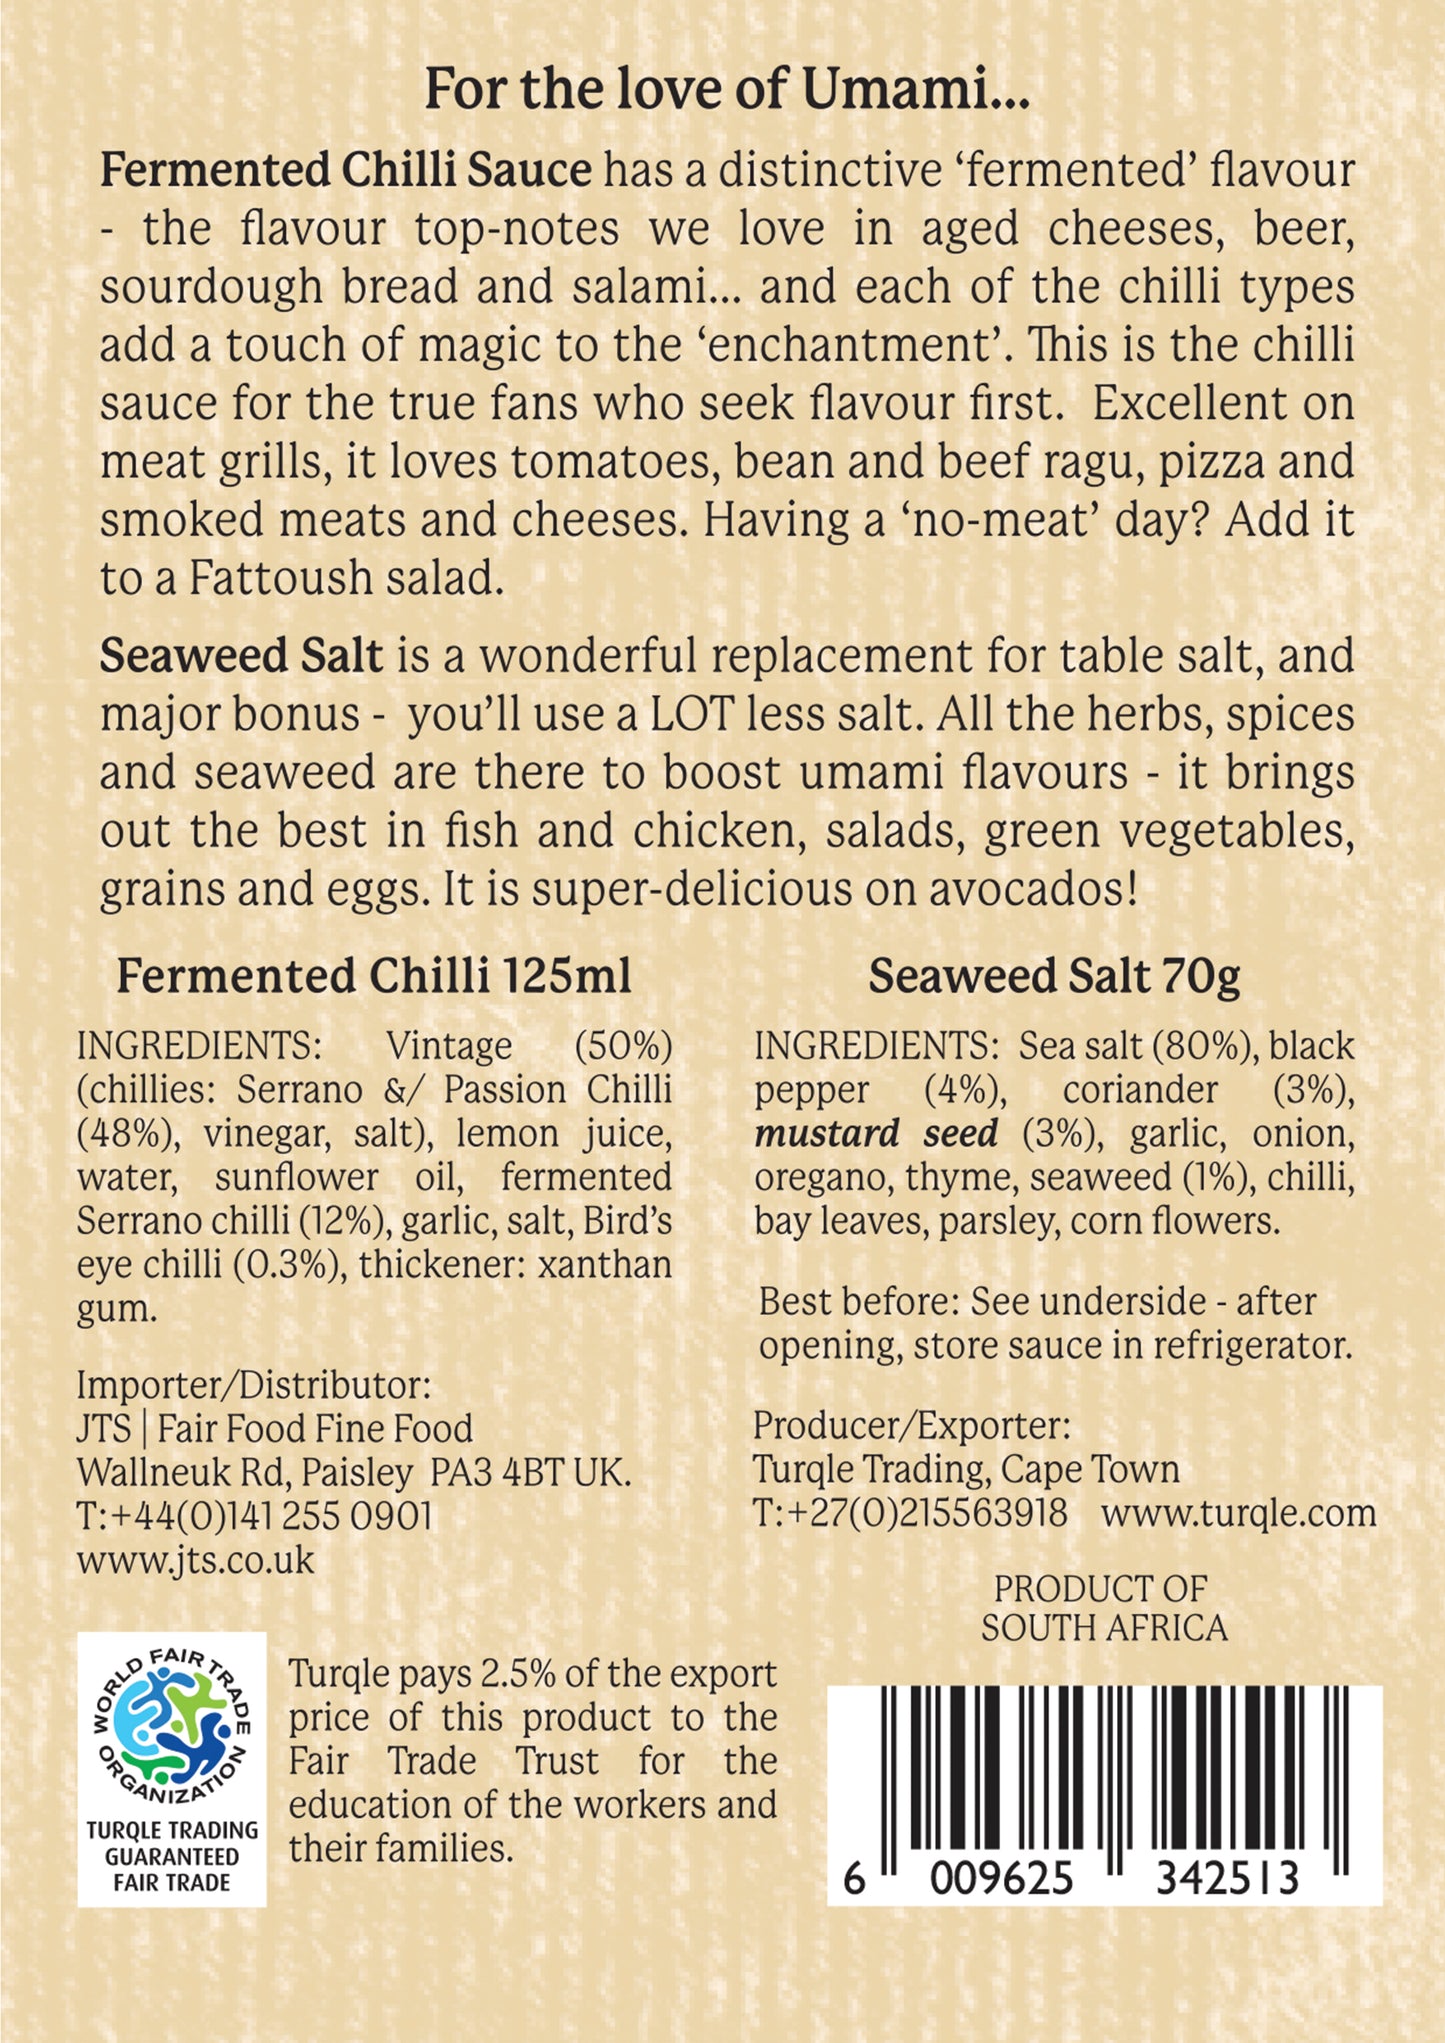 Fermented Chilli Hot Drops & Seaweed Salt Grinder Gift Set